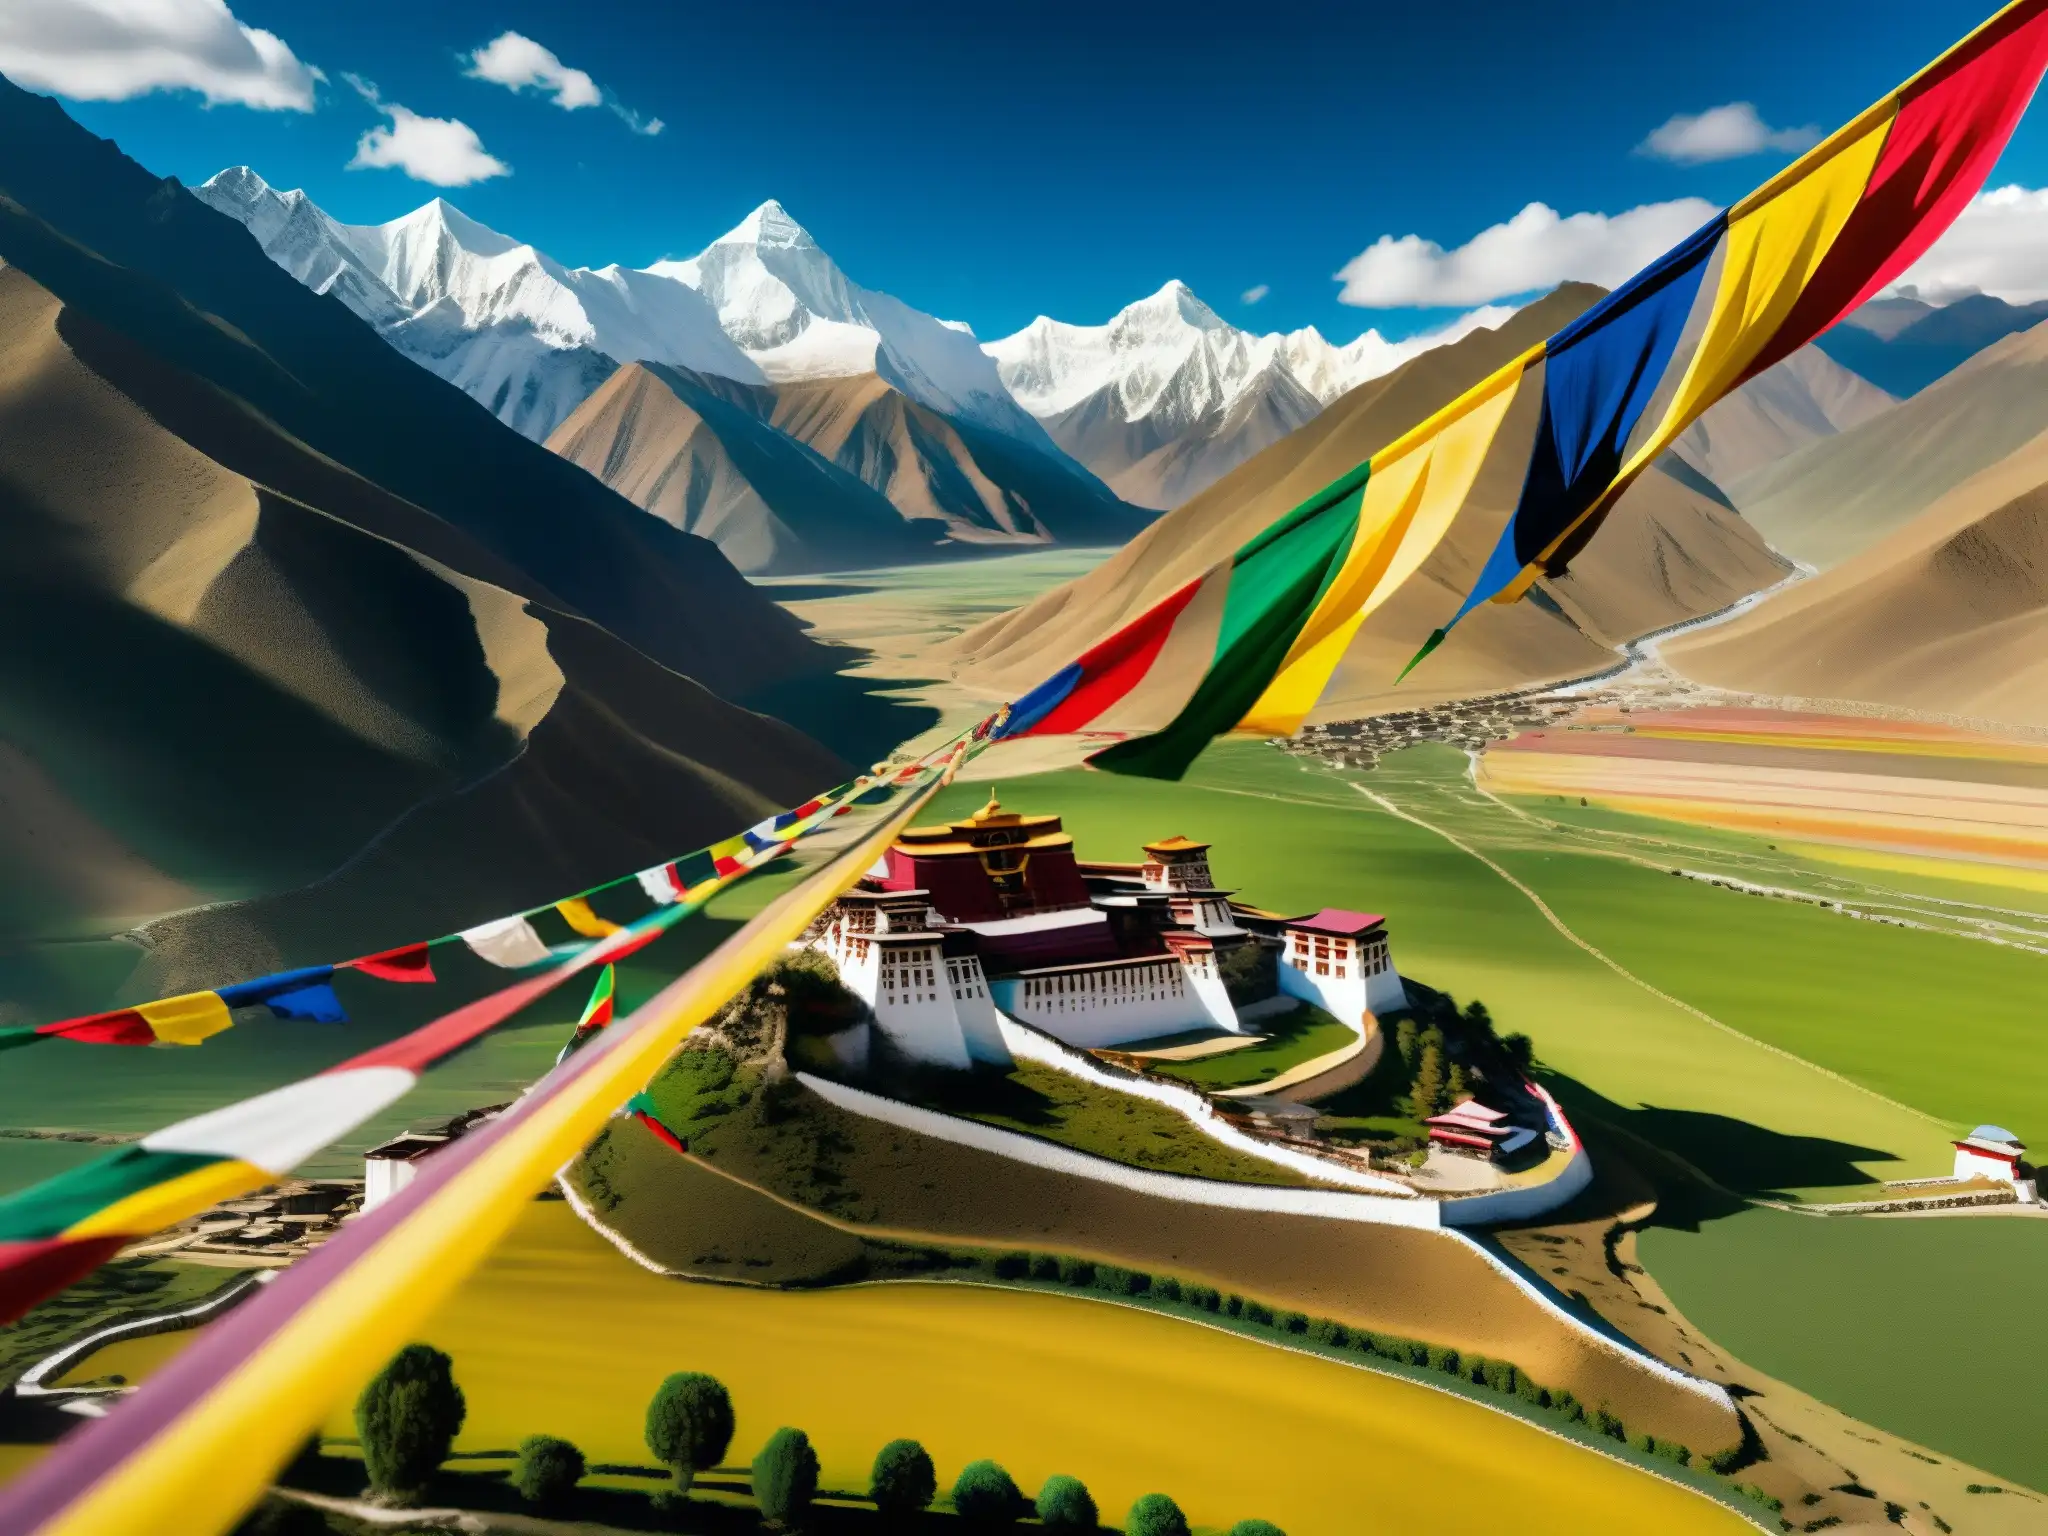 Un paisaje tibetano impresionante con montañas nevadas, valles verdes y banderas de oración coloridas ondeando